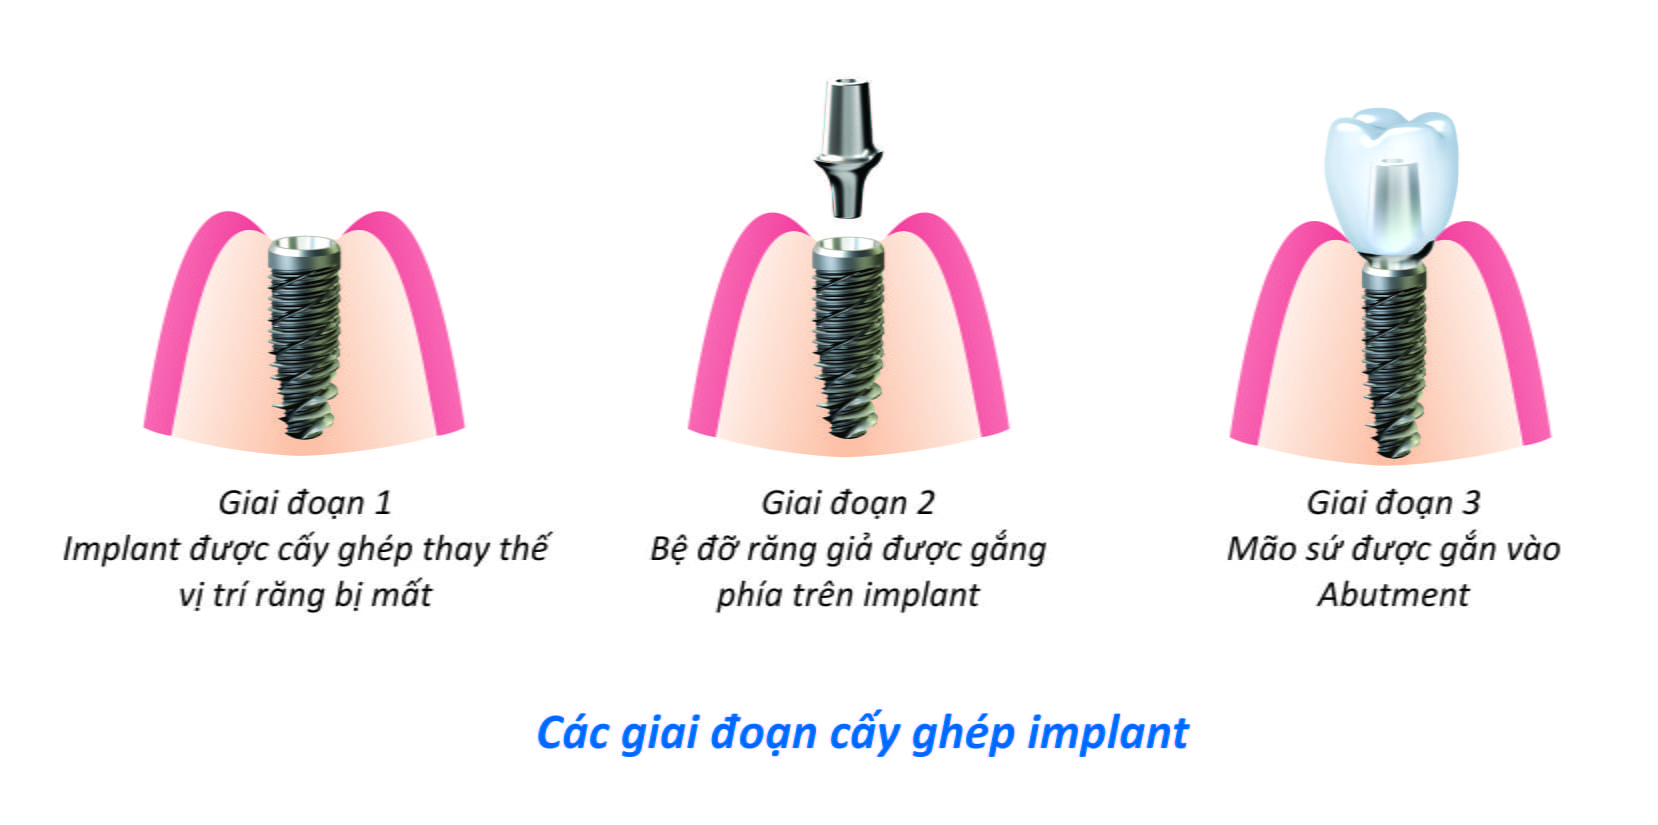 Cấy ghép răng Implant hiệu quả